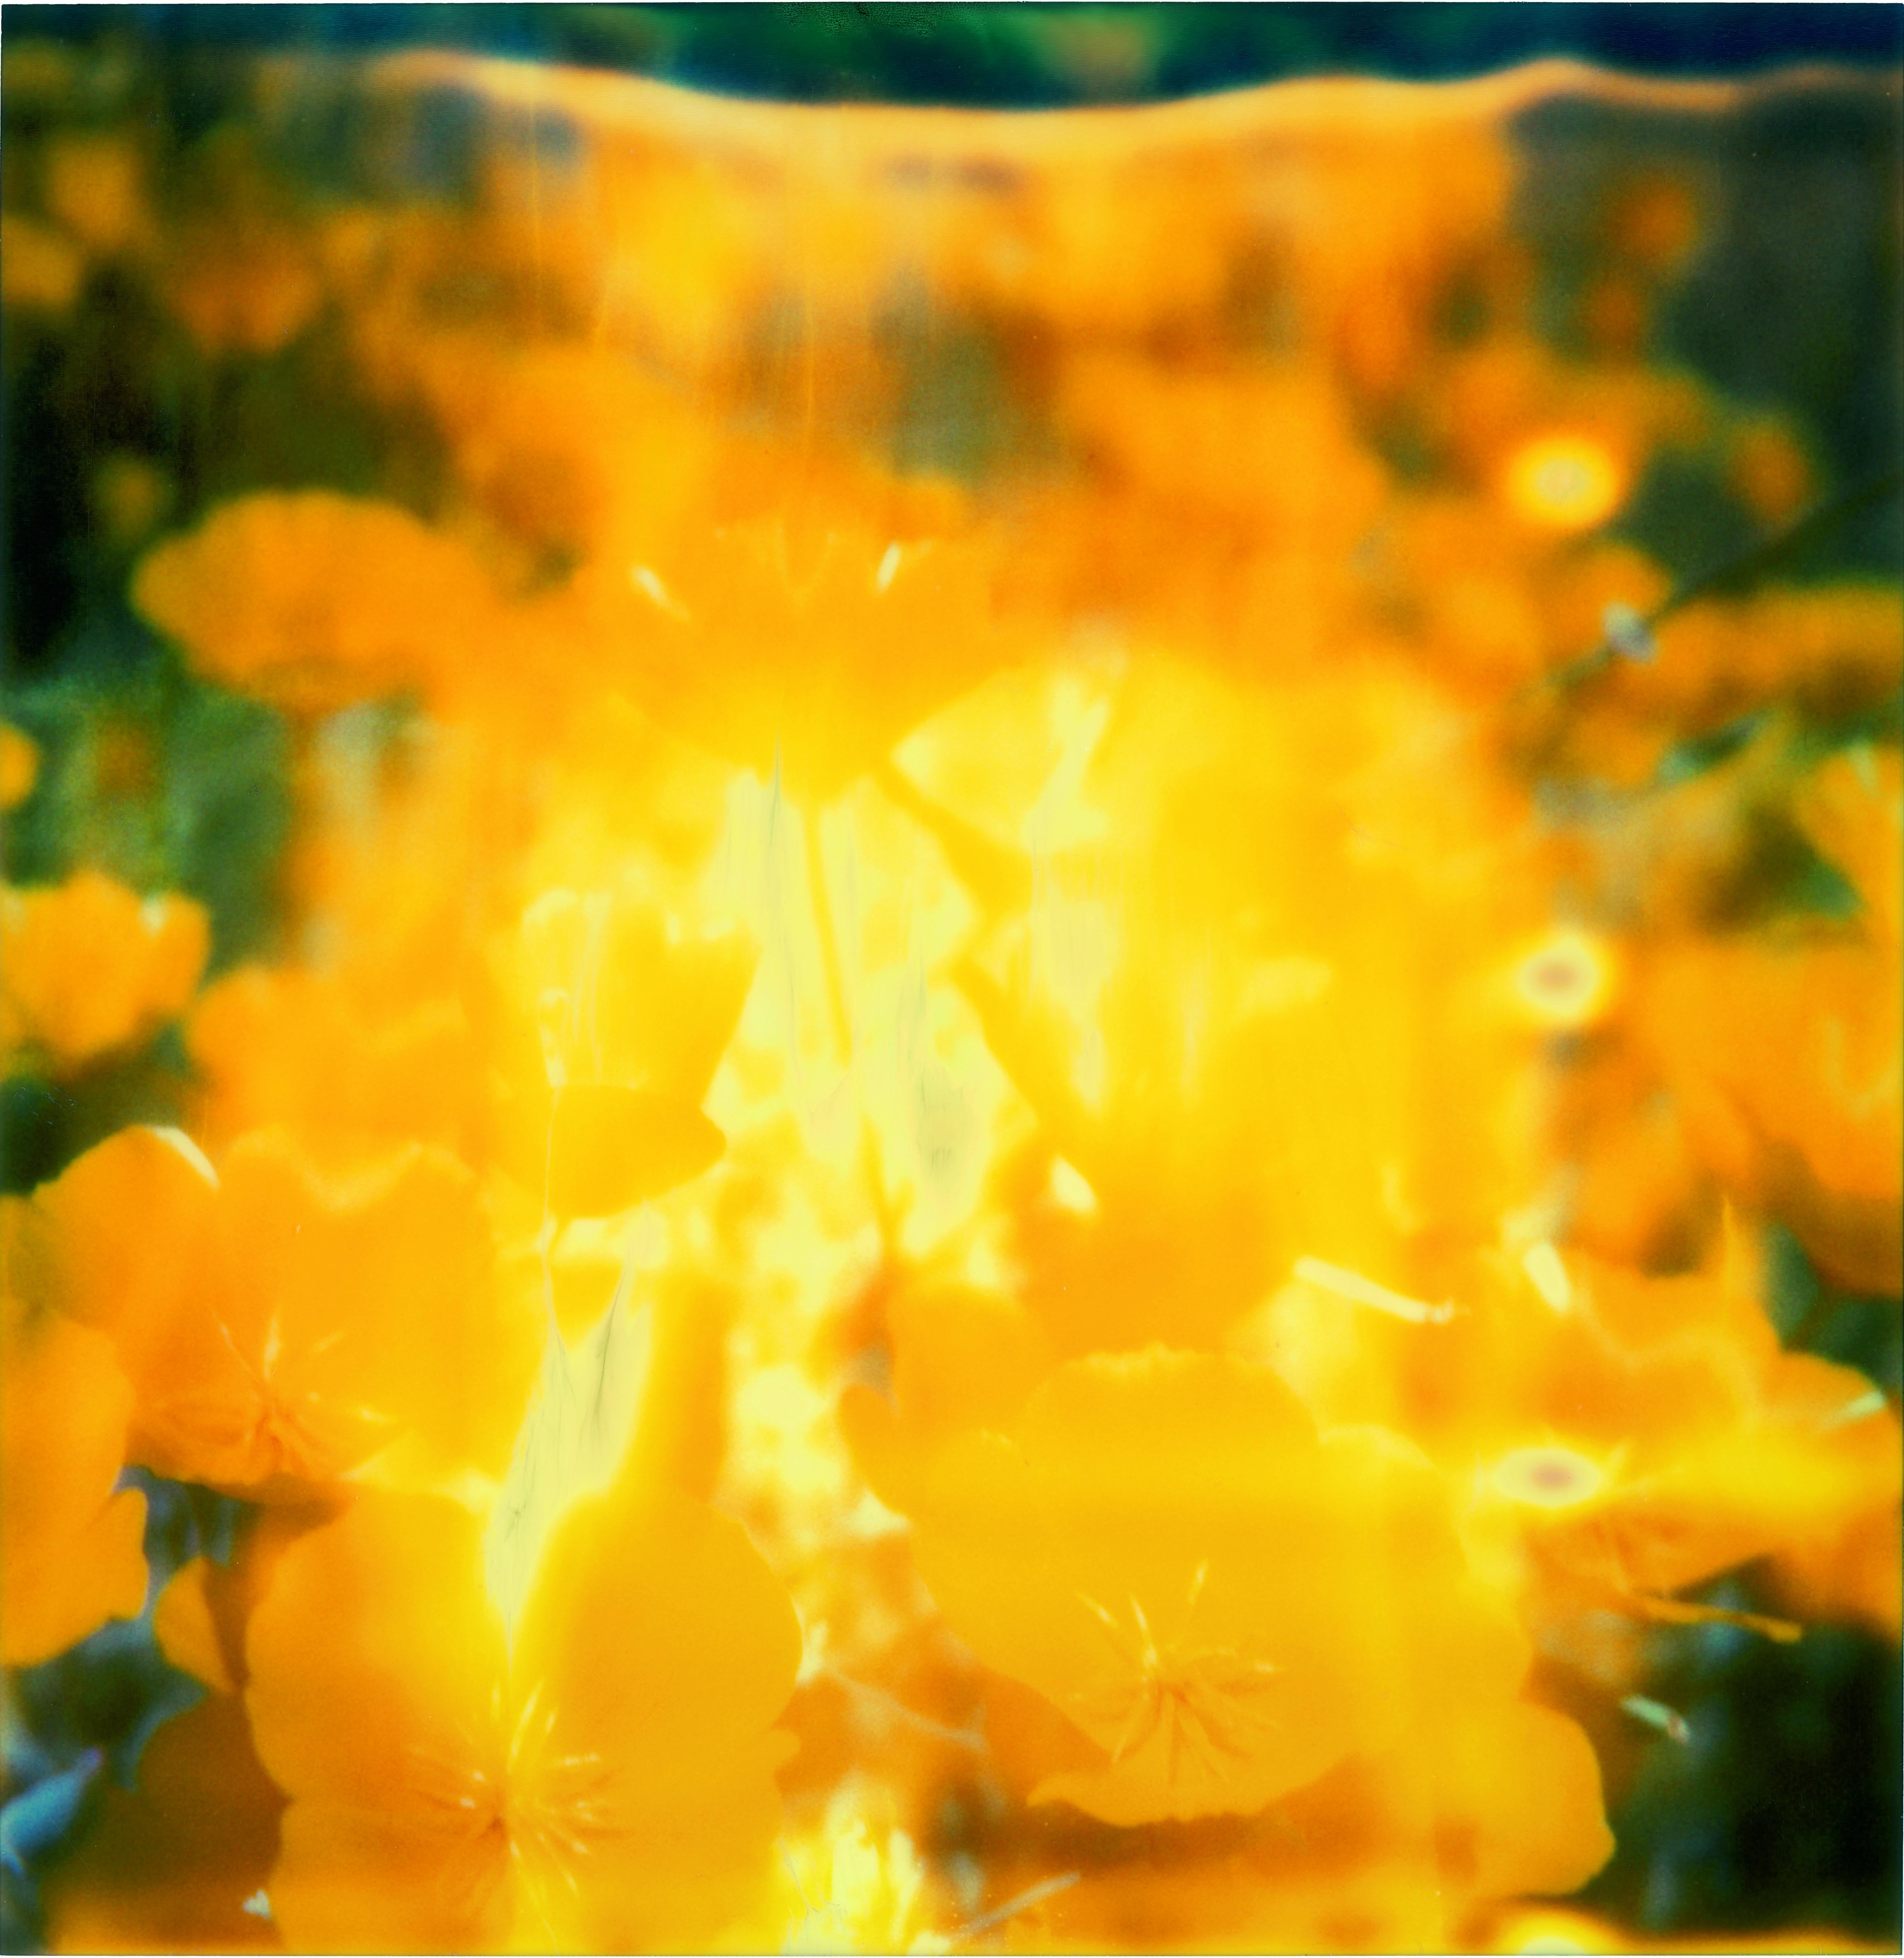 Fleur jaune (The Last Picture Show) Polaroid, 128 x126 cm, tirage vintage analogique